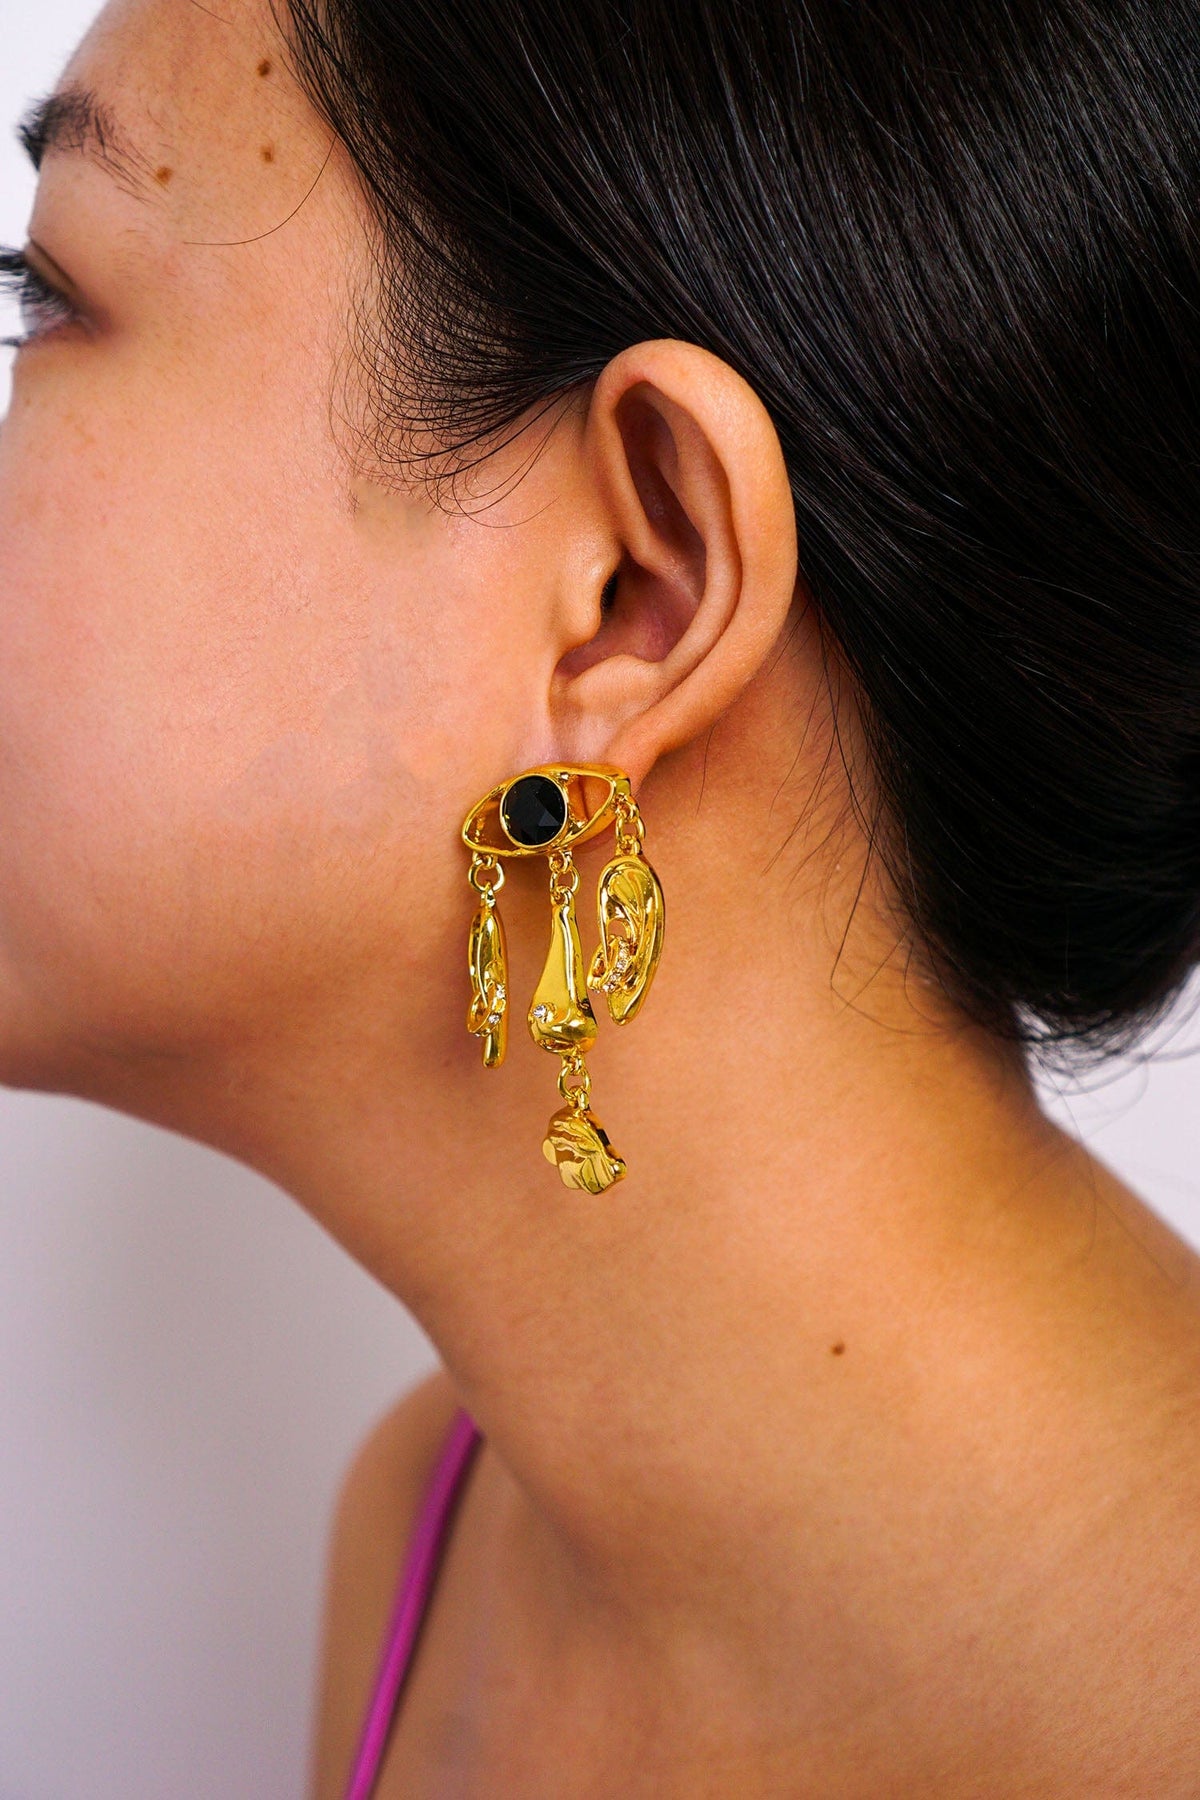 DCD EARRINGS Gold Geometric Eyes Ears Lips Earrings